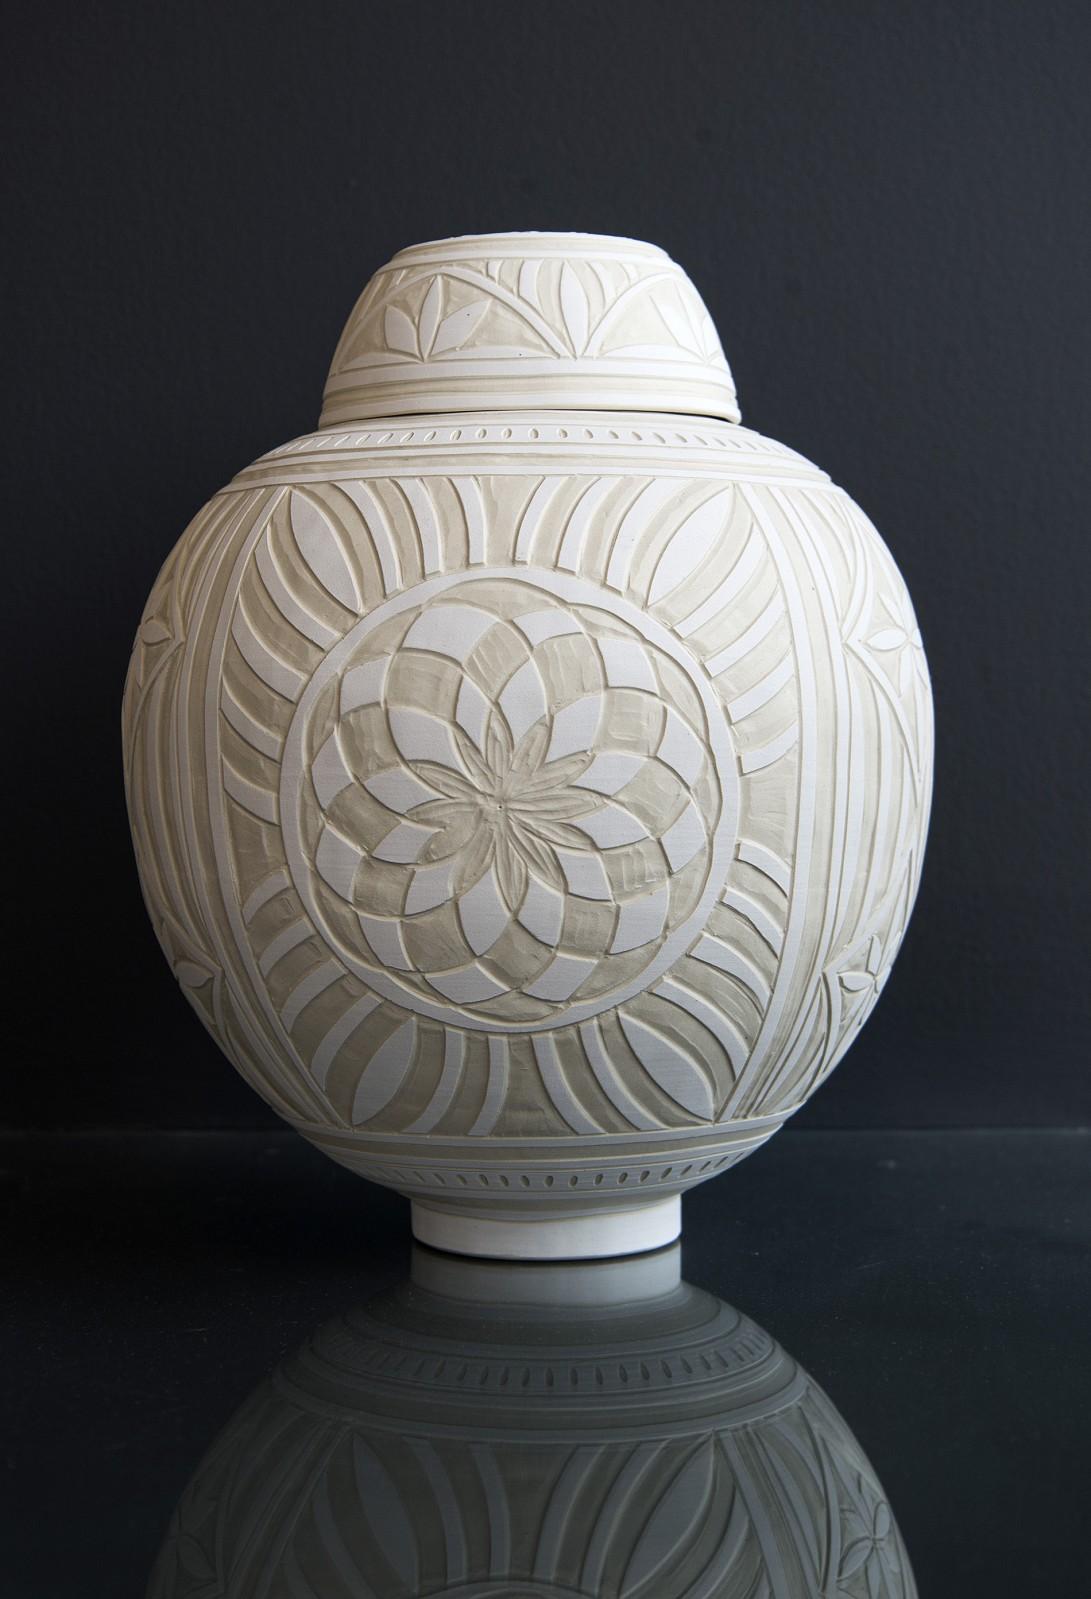 Loren Kaplan Abstract Sculpture - Medium Engraved Ginger Jar - decorative, detailed, handcrafted, porcelain vessel